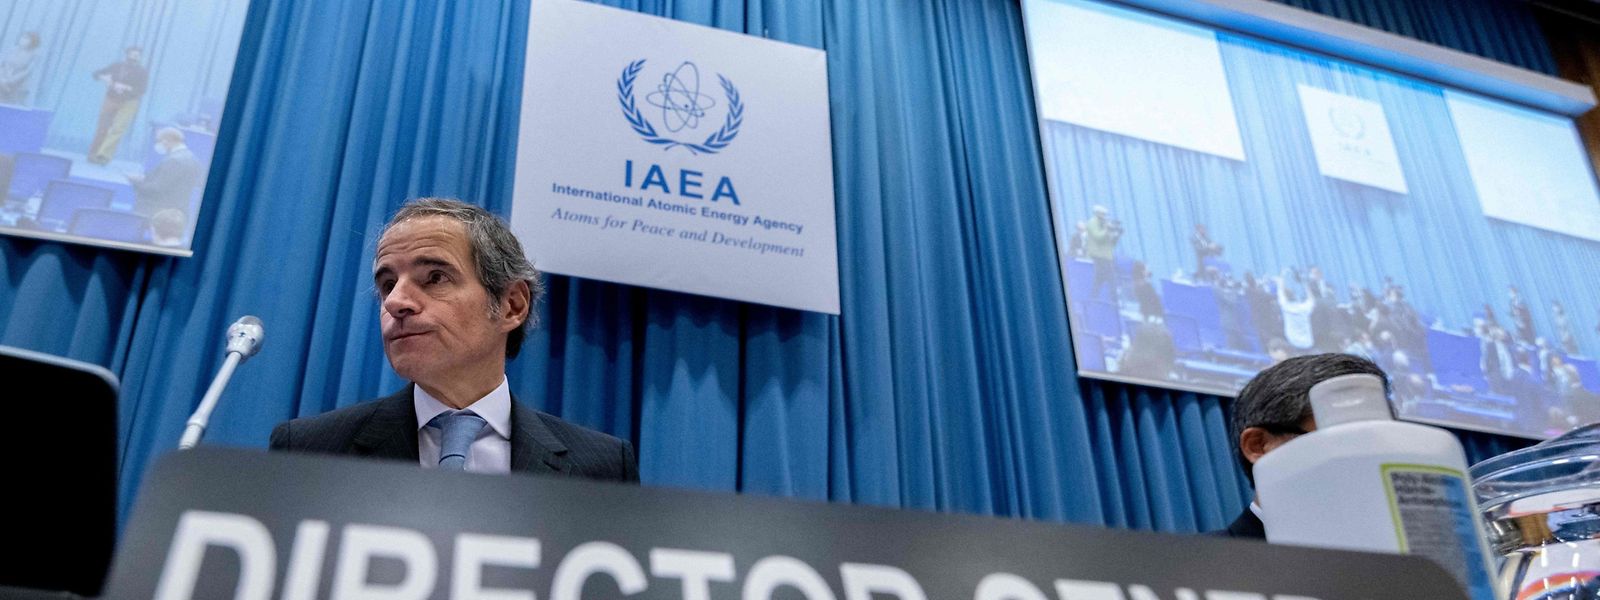 Rafael Grossi, diretor-geral da Agência Internacional de Energia Atómica.